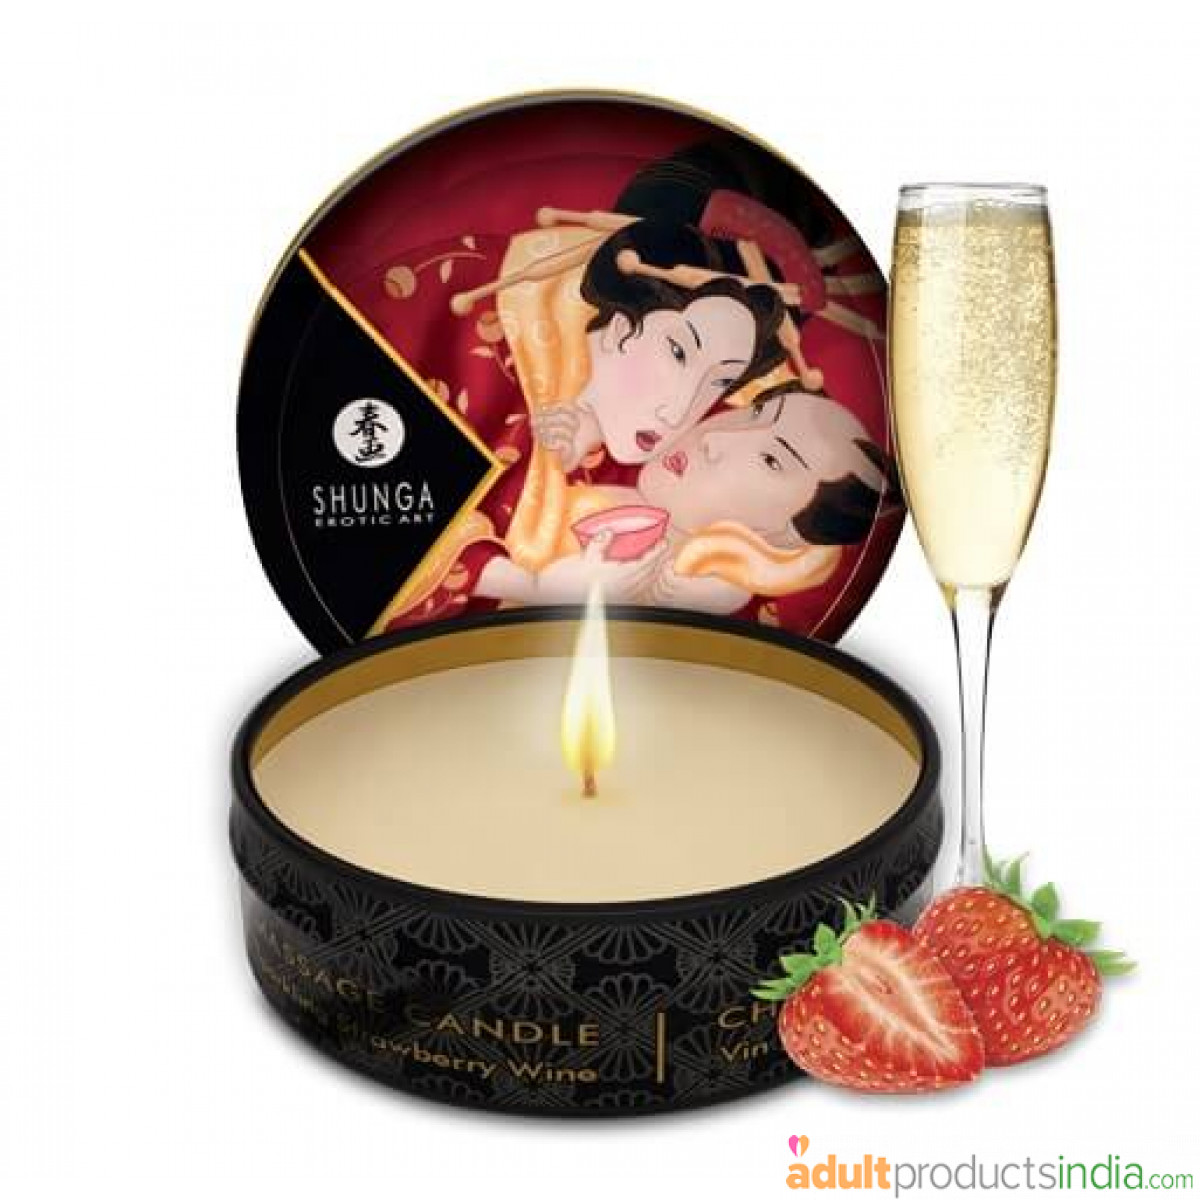 Shunga Japanese Massage Candle - Sparkling Strawberry Wine